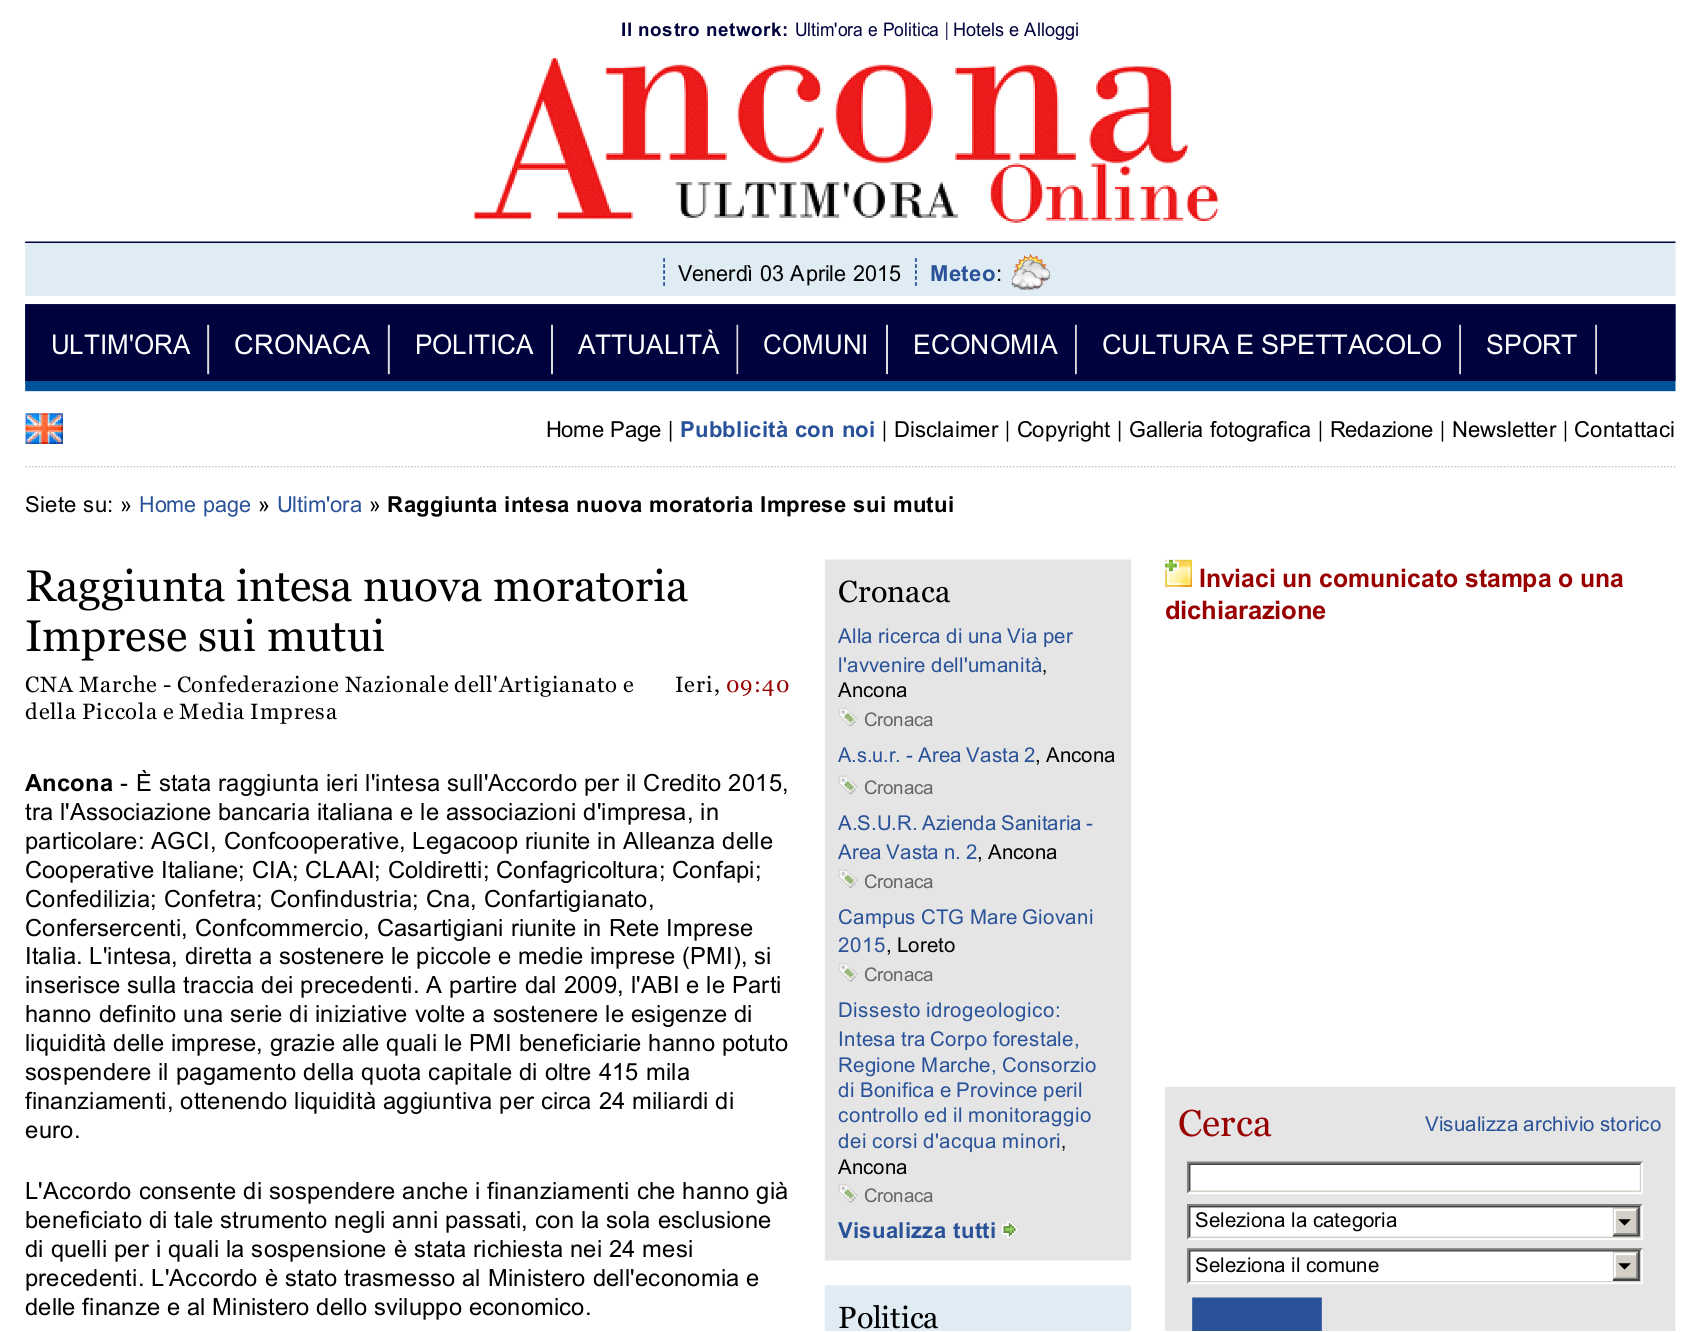 Articolo pubblicato sul sito anconaonline.com anconaonline.com Più : www.alexa.com/siteinfo/anconaonline.